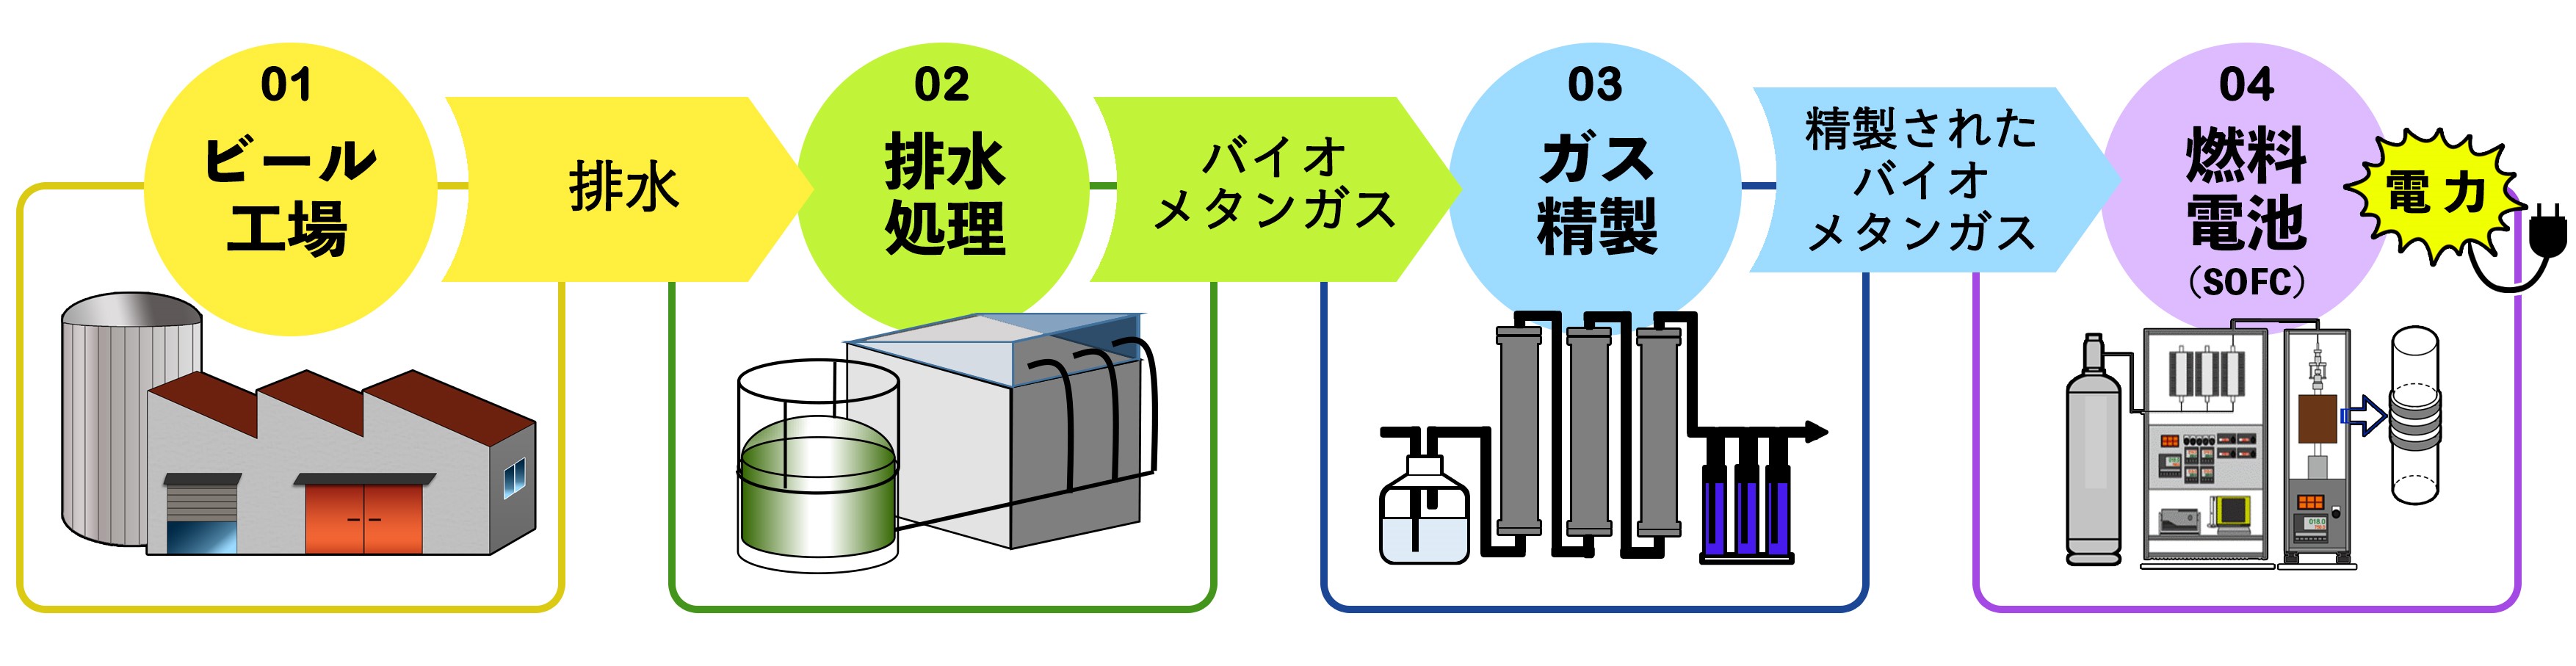 ビール工場の排水から電気 燃料電池 Sofc 試験で長時間連続発電に成功 Co2排出量削減に向けた新たなクリーンエネルギーモデルの開発を目指して 研究成果 九州大学 Kyushu University